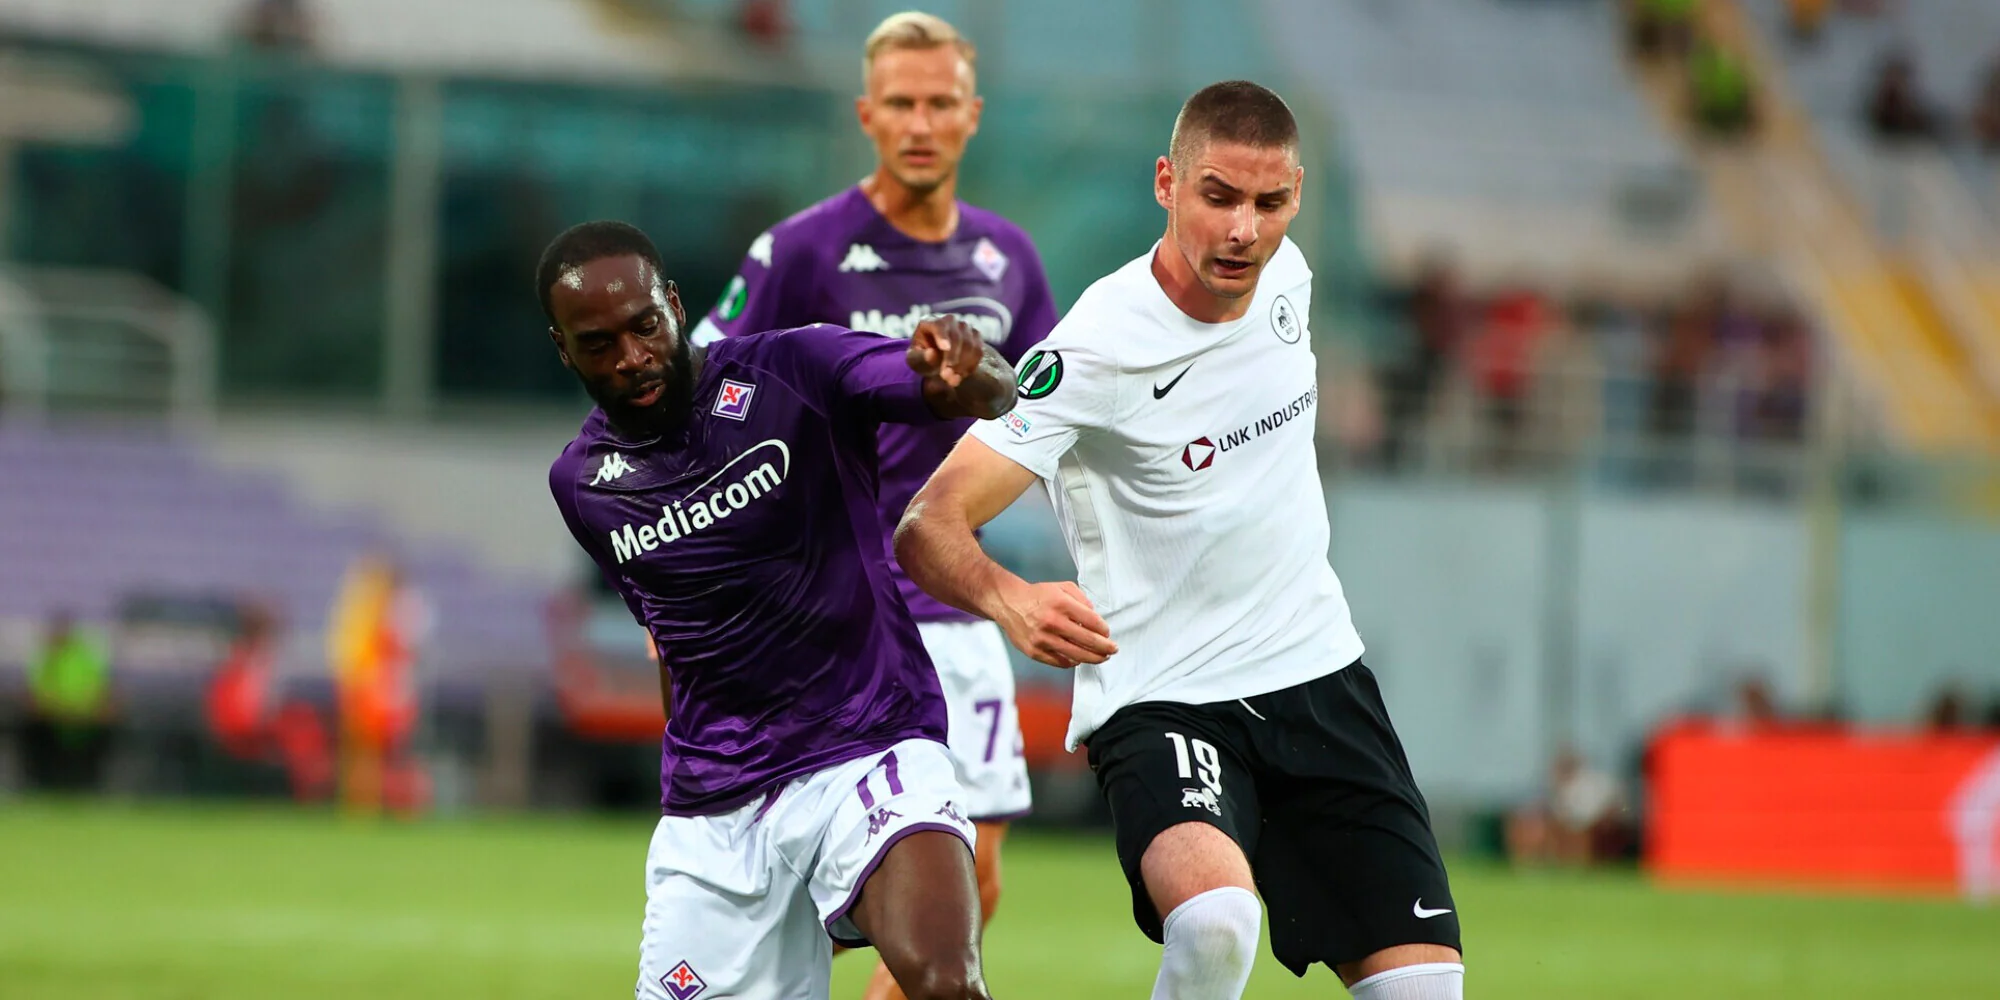 Tuttosport – Fiorentina-Riga 1-1, il tabellino